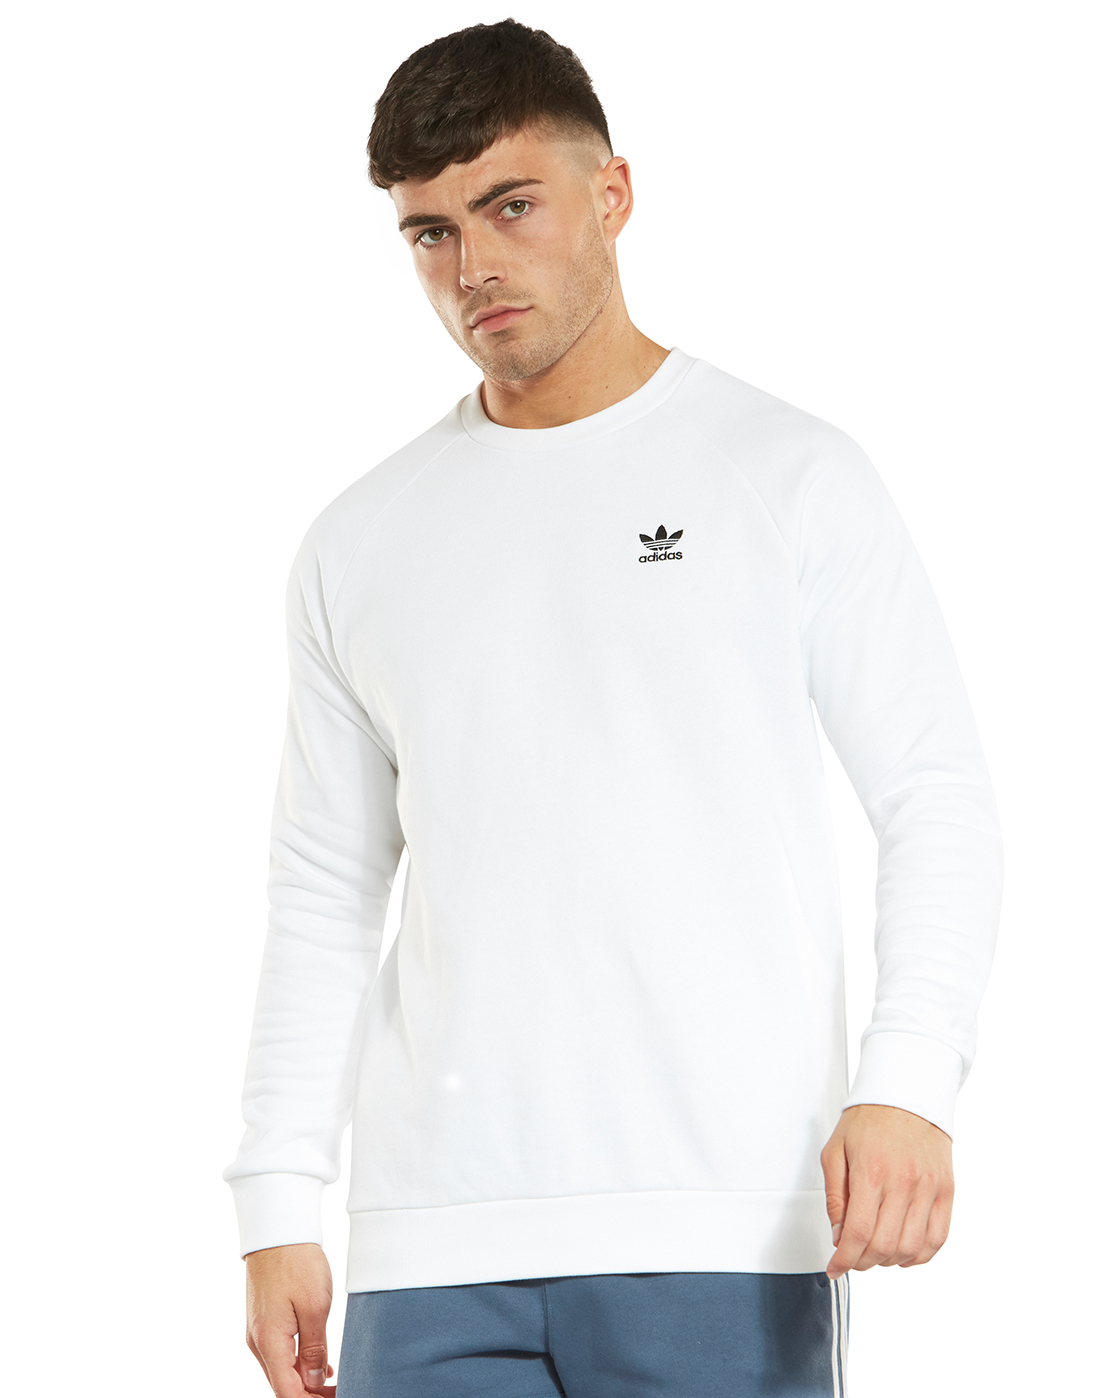 adidas Originals Mens Originals Crew Neck Sweatshirt - White | Life ...